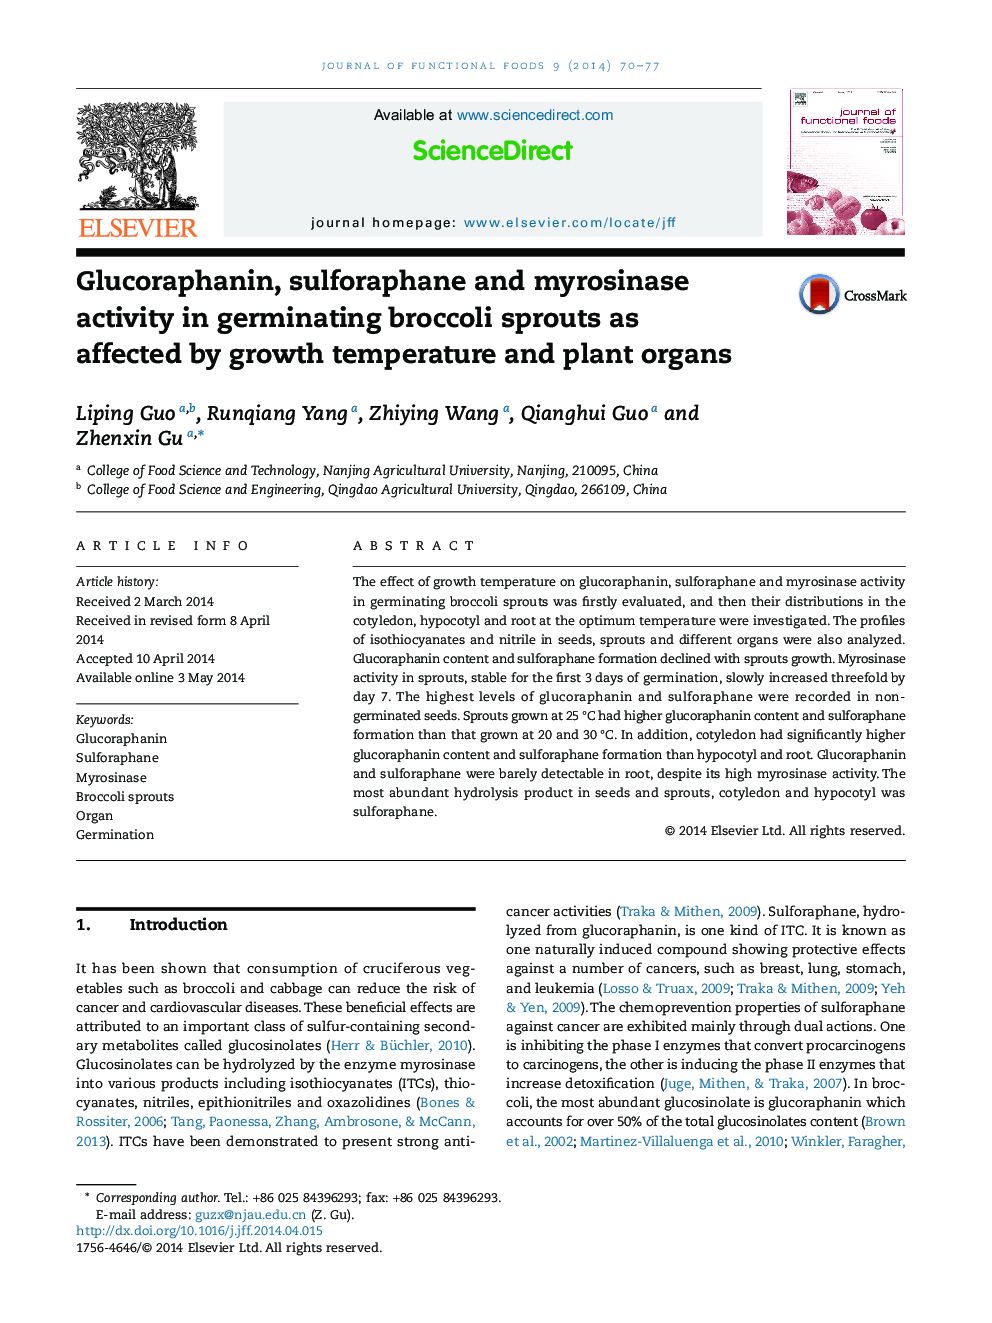 فعالیت گلوکراپافین، سولفورفان و میروسیناز در جوانه زنی بره های بروکلی تحت تأثیر دمای رشد و اندام های گیاهی 